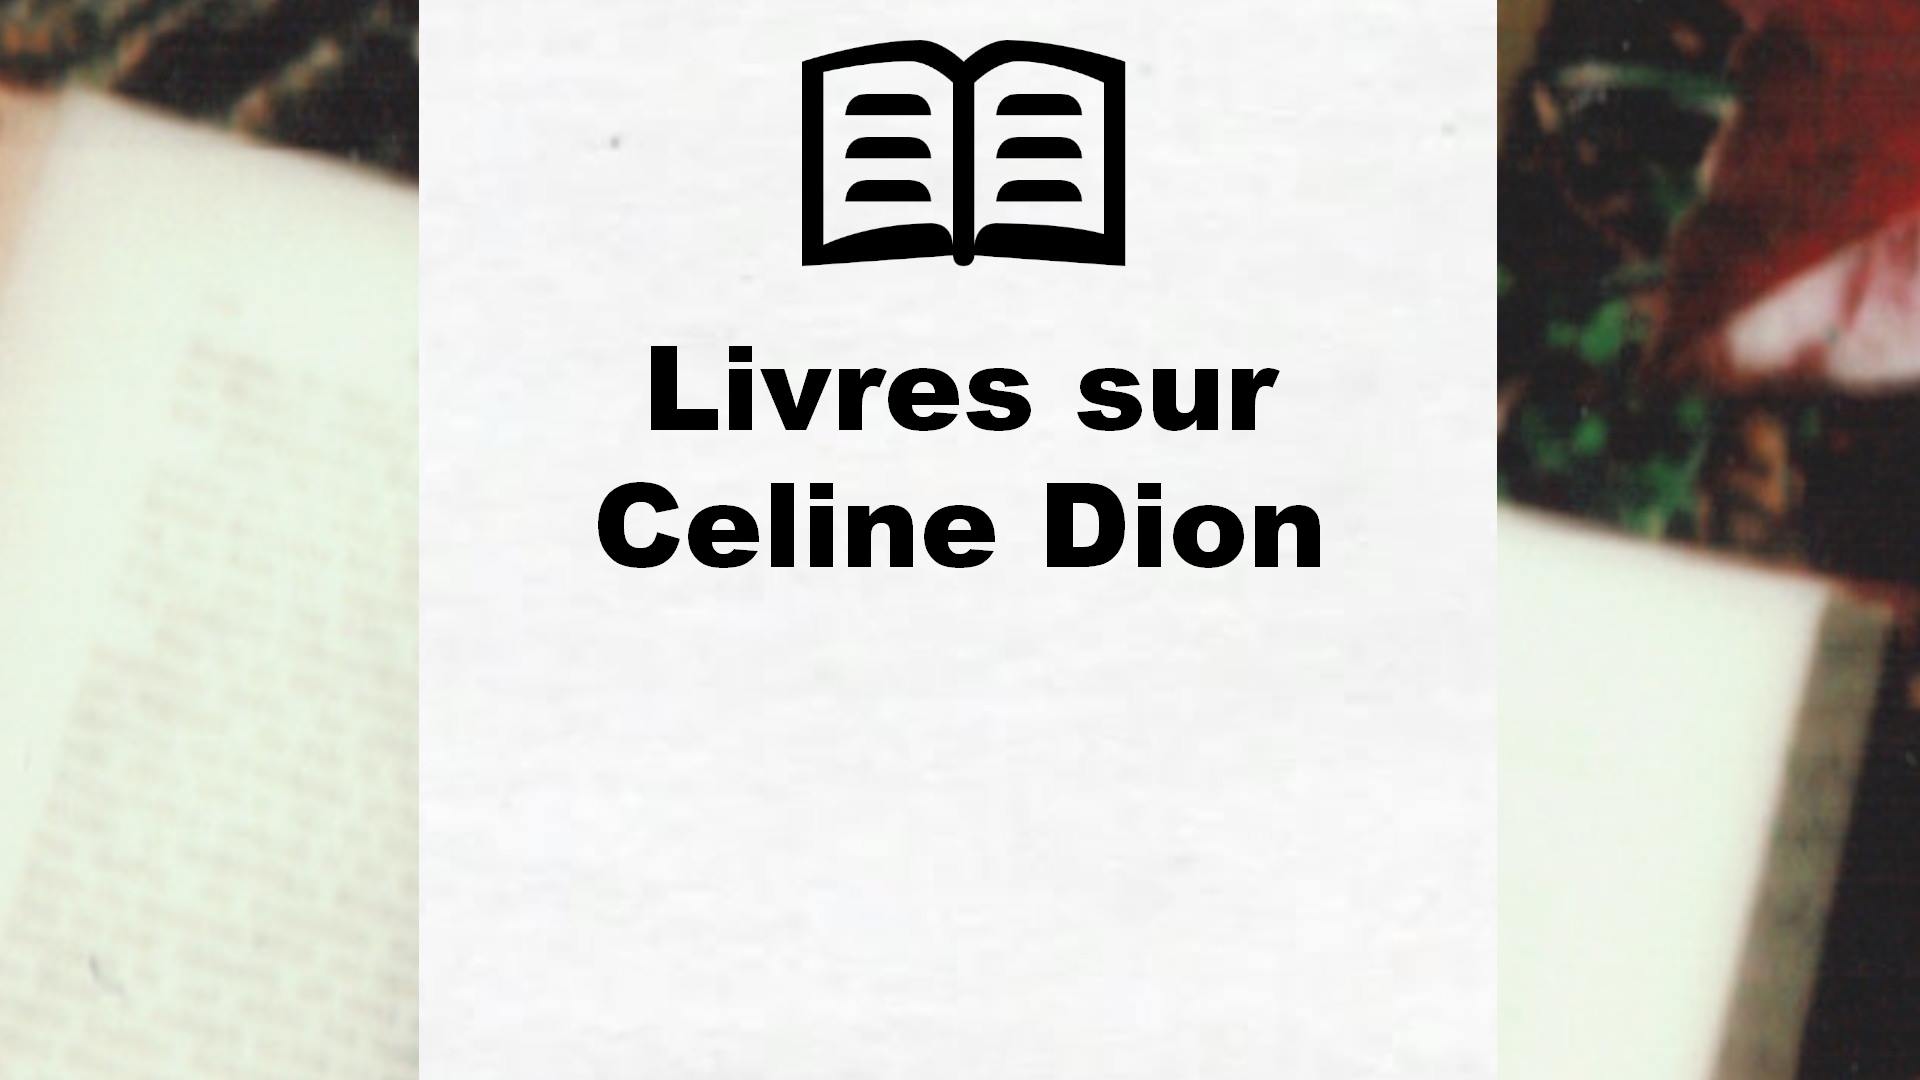 Livres sur Celine Dion